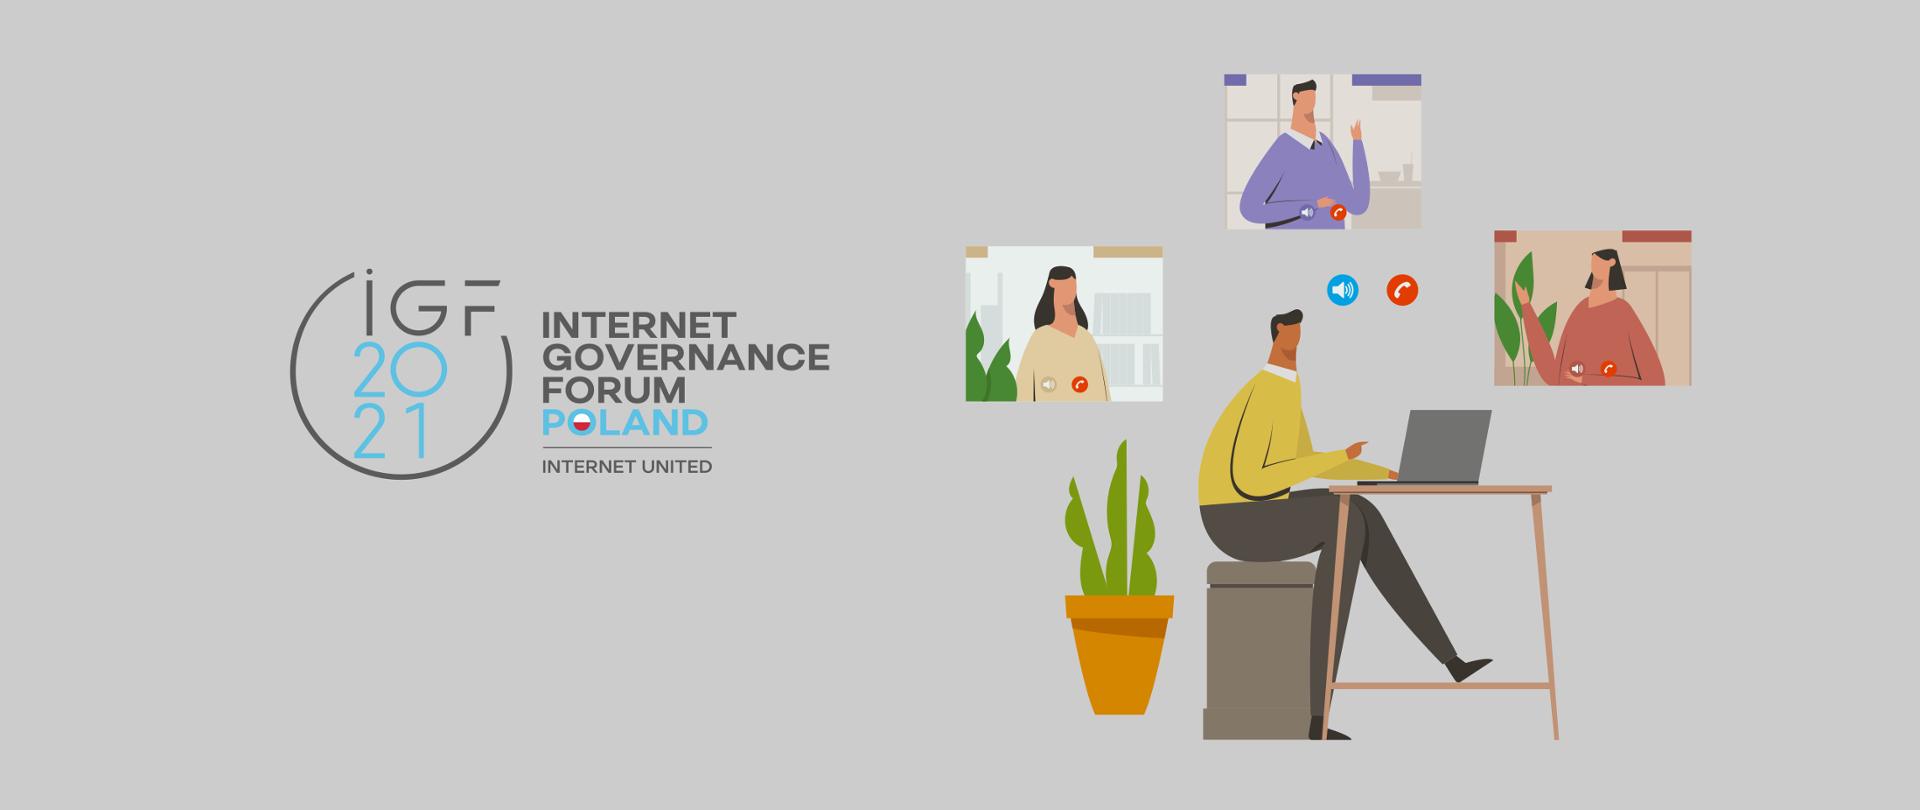 Grafika wektorowa na szarym tle. Z prawej strony cztery osoby w trakcie wideorozmowy. Z lewej - logo IGF 2021 i tekst IGF 2021 Internet Governance Forum Poland, Internet United. 